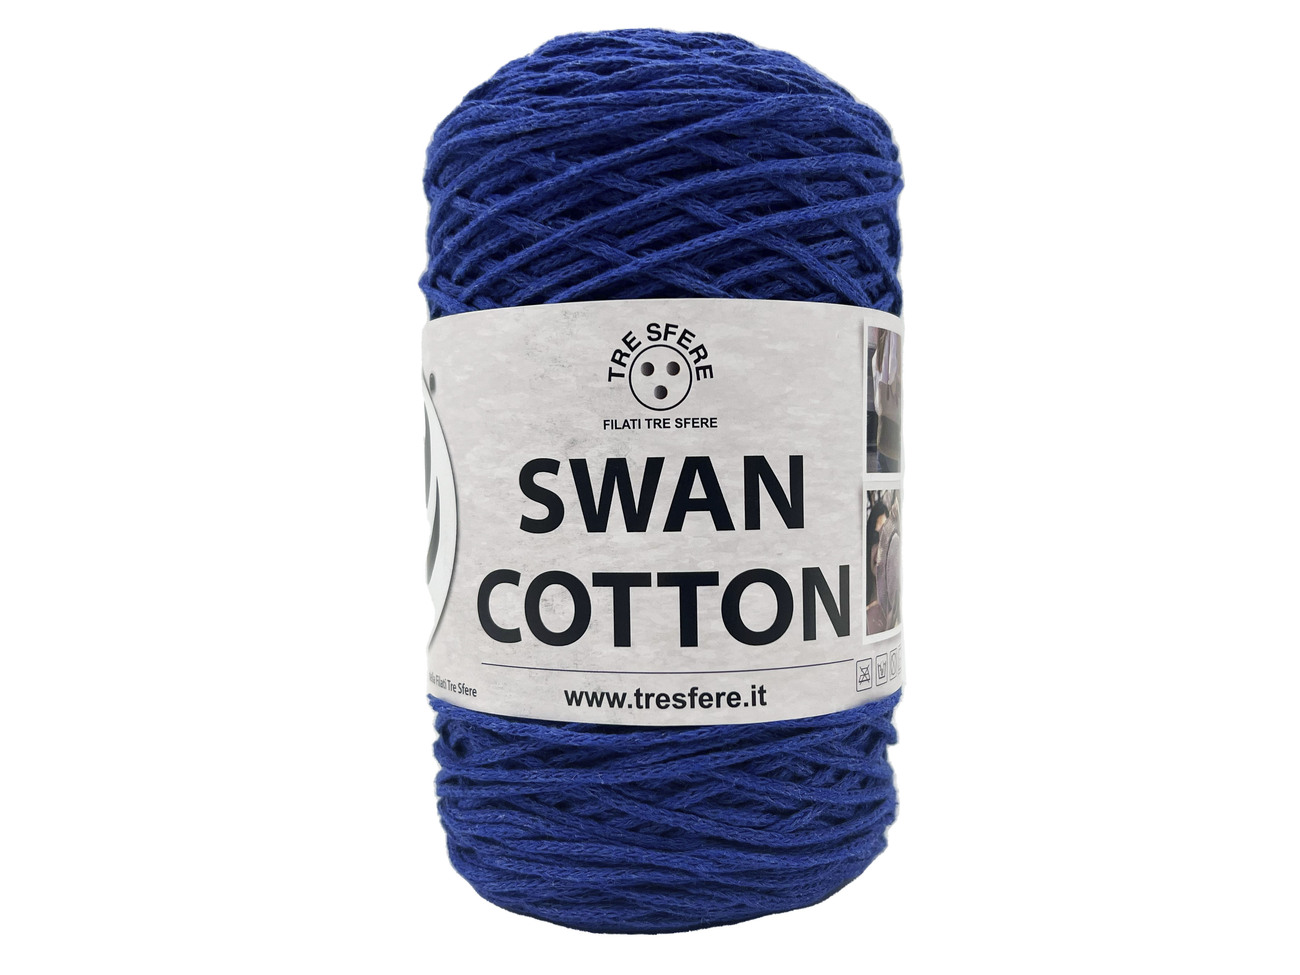 CORDINO SWAN COTTON  250 grammi - bluette